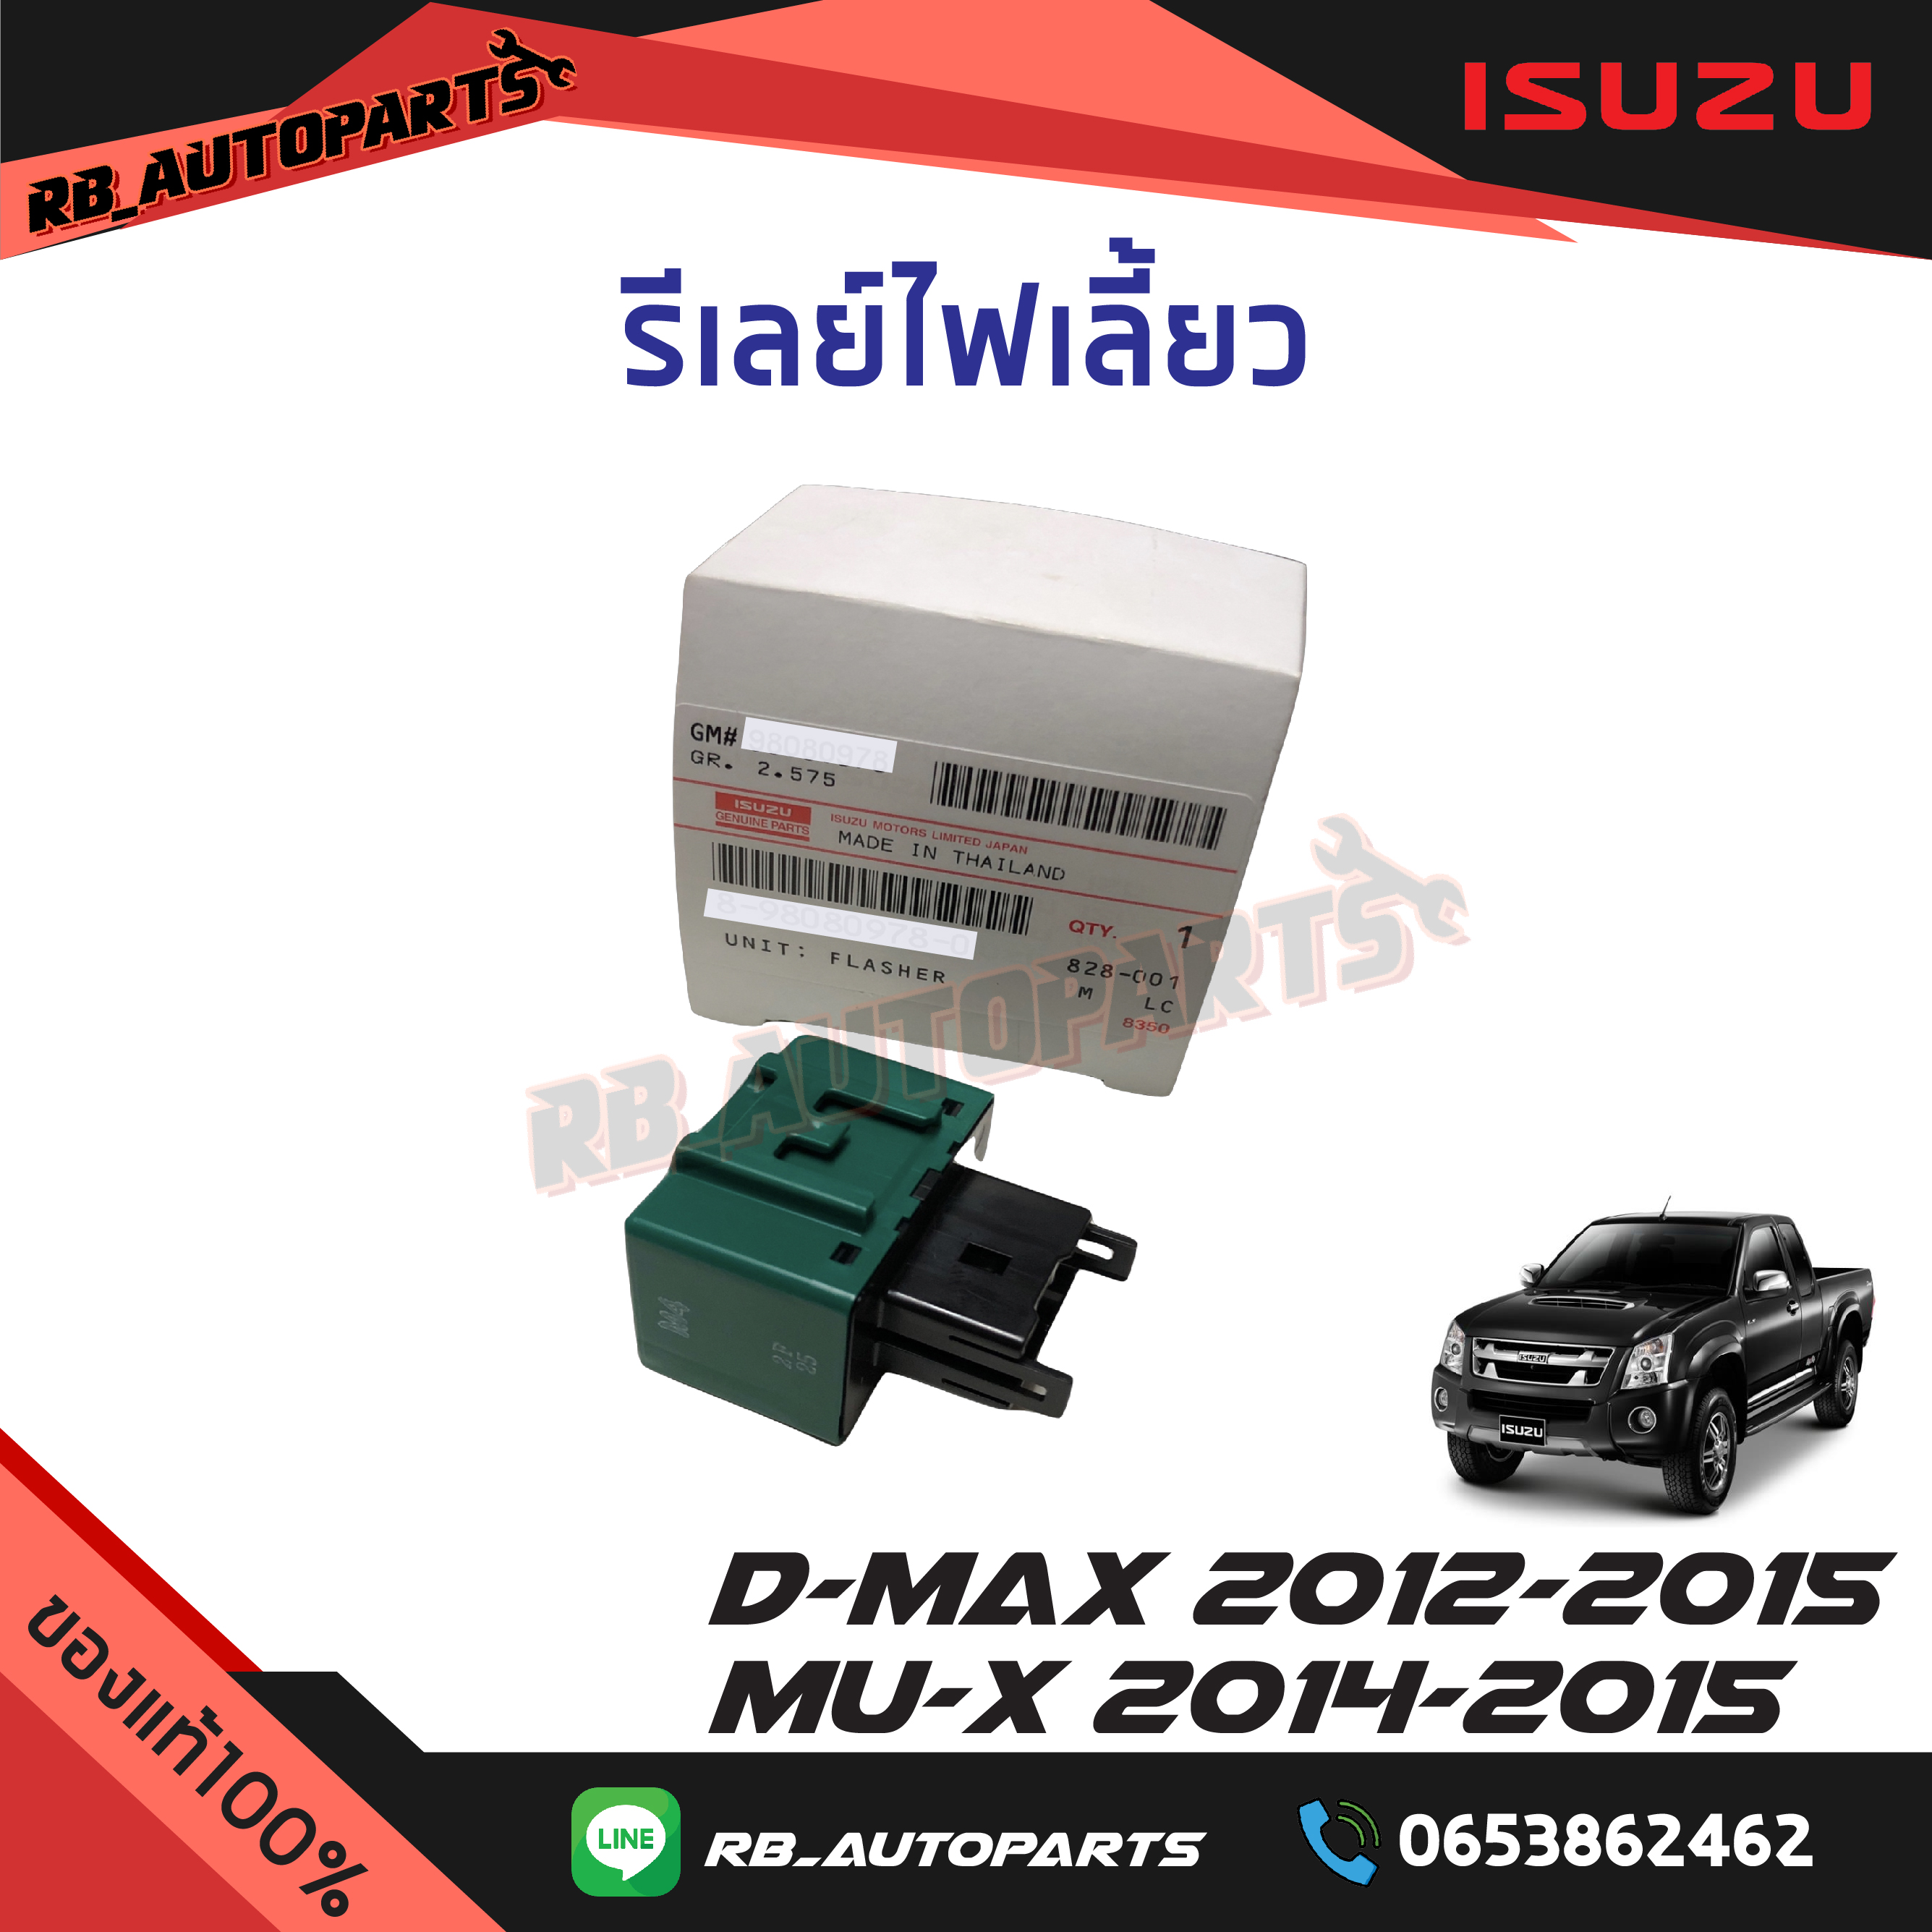 รีเลย์ไฟเลี้ยว Isuzu D-max ปี 2012-2015 Mu-x ปี 2014-2015 แท้ศูนย์